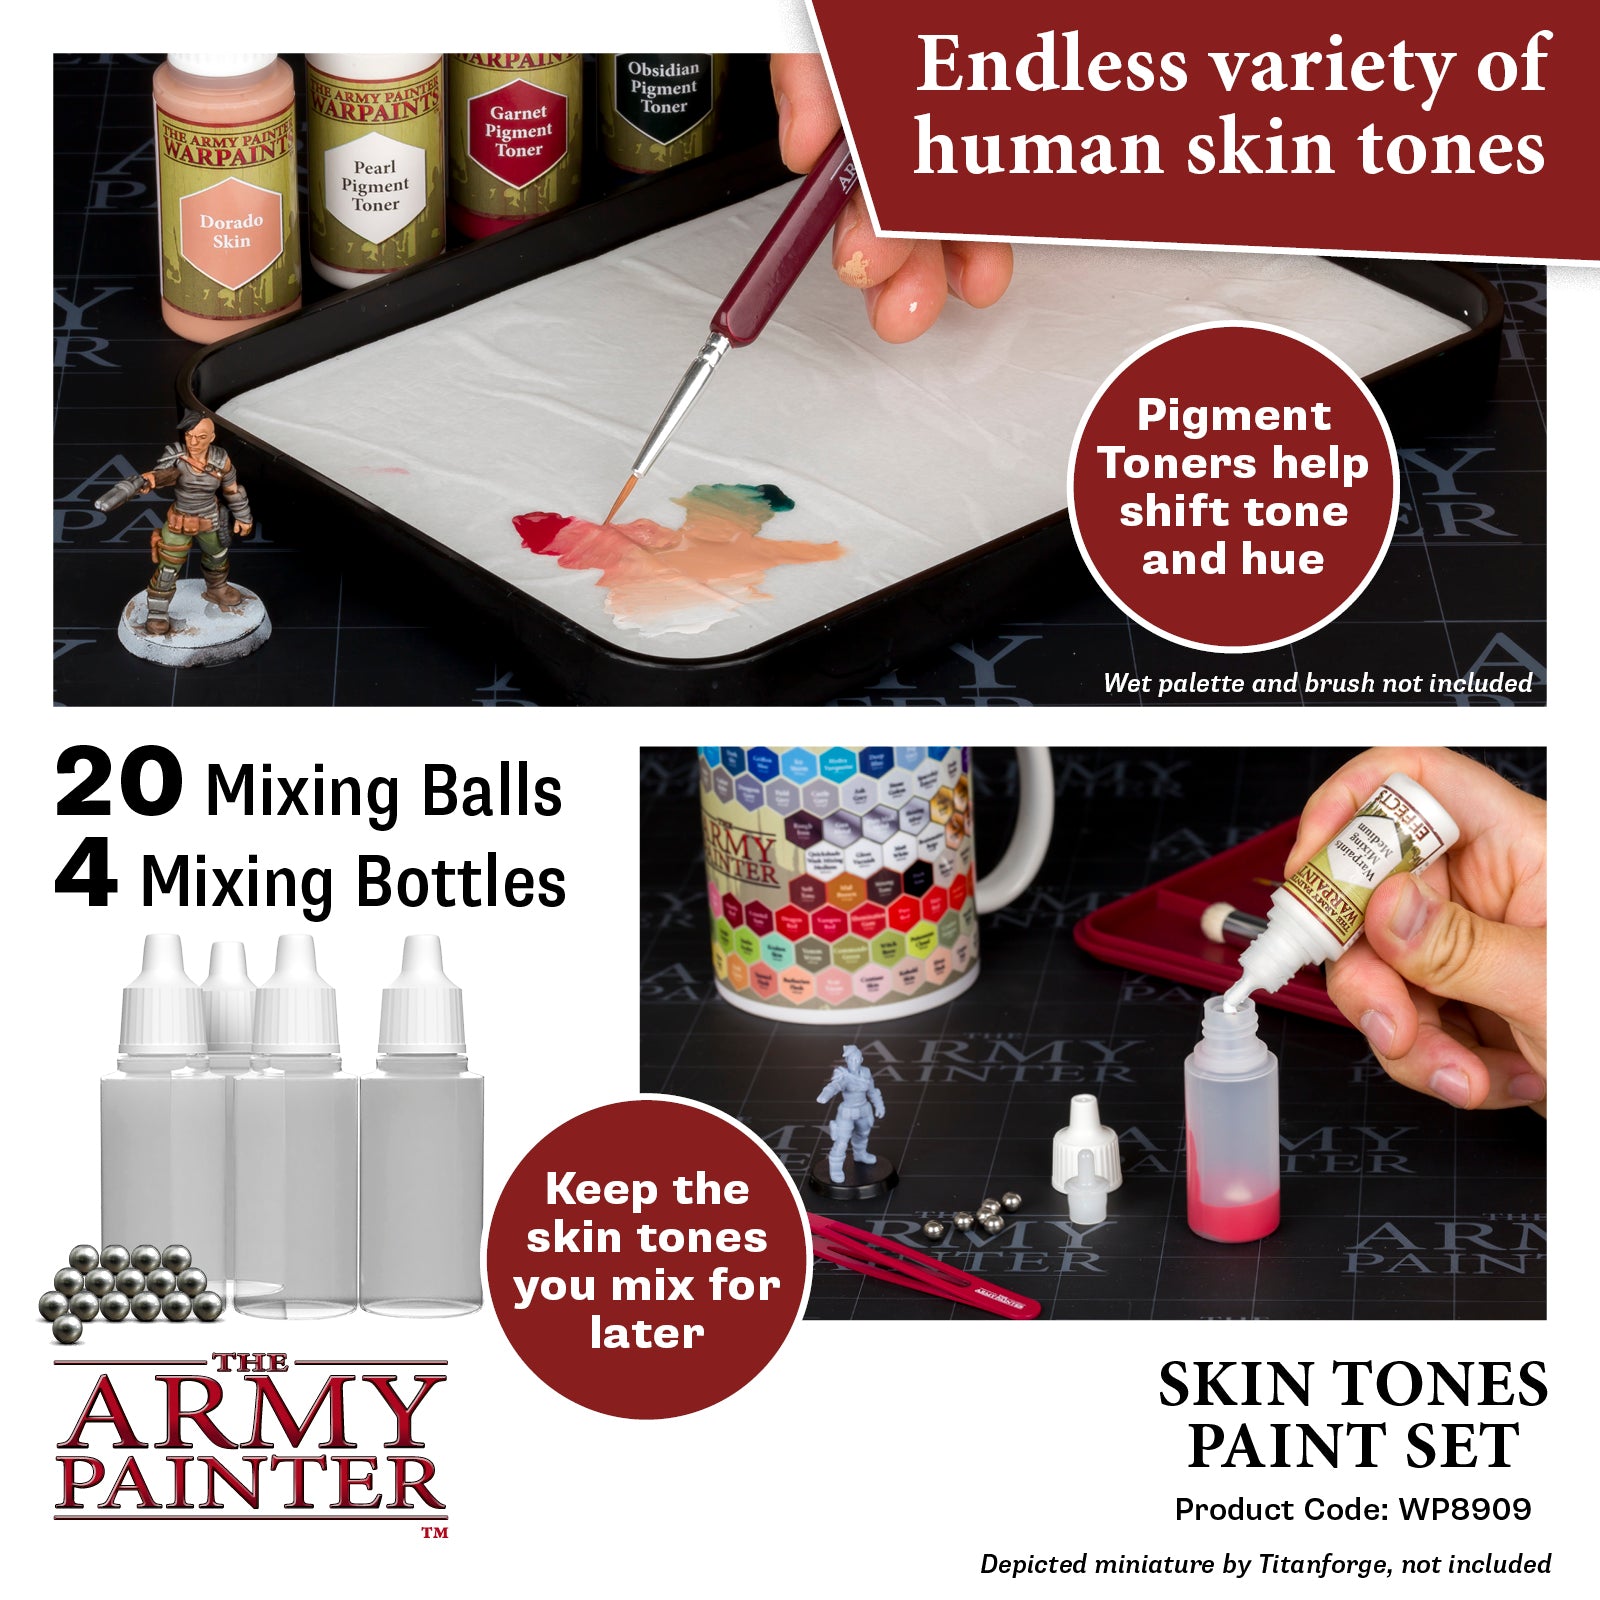 Miniature Army Painter Paint Sets